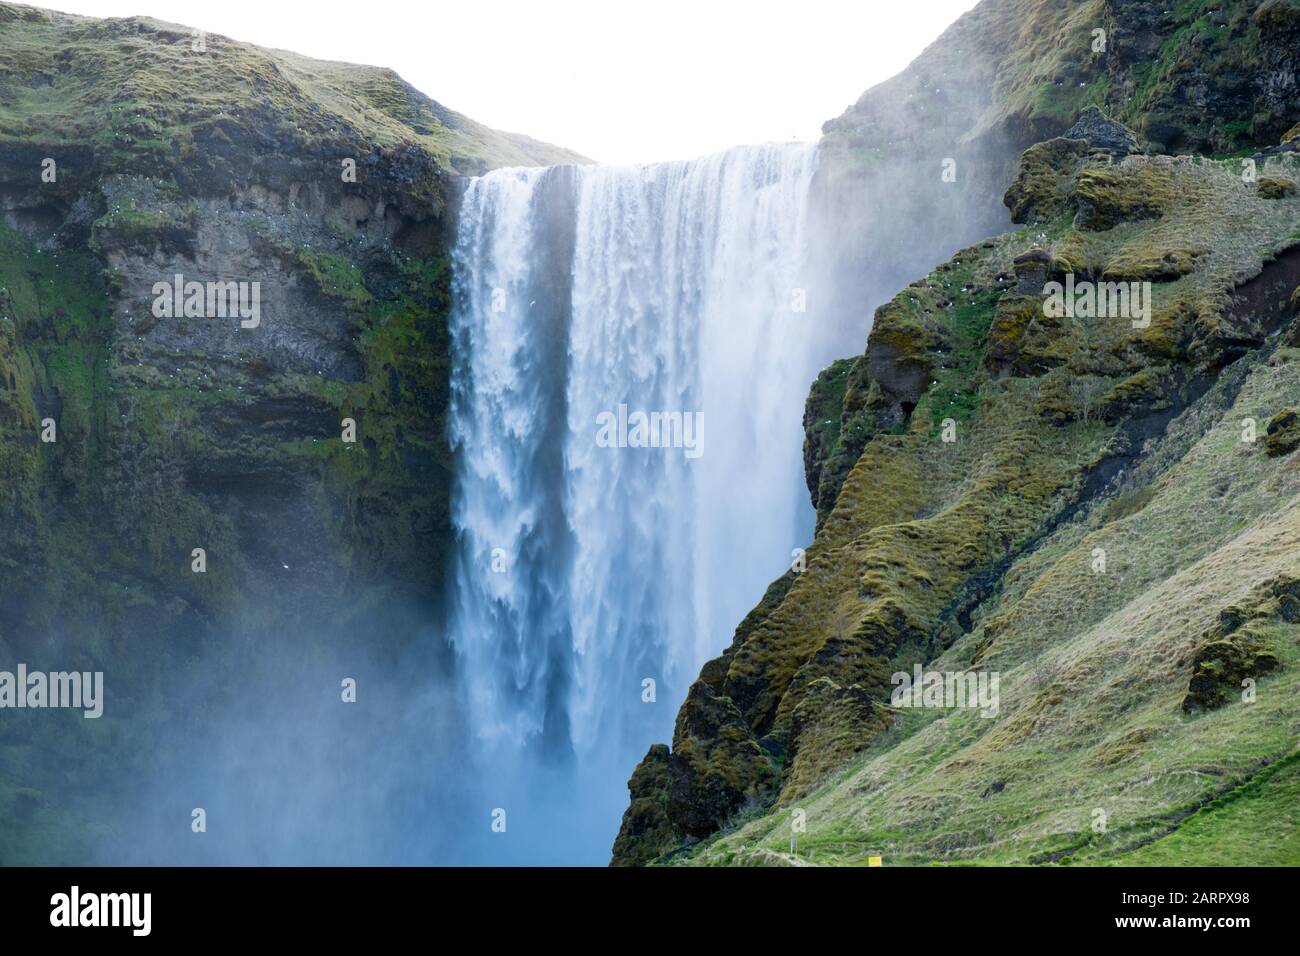 Cascata di Skógafoss che scorre con grande potenza in una giornata torbida in Islanda appena fuori dalla famosa circonvallazione. La cascata è uno dei luoghi più incredibili Foto Stock